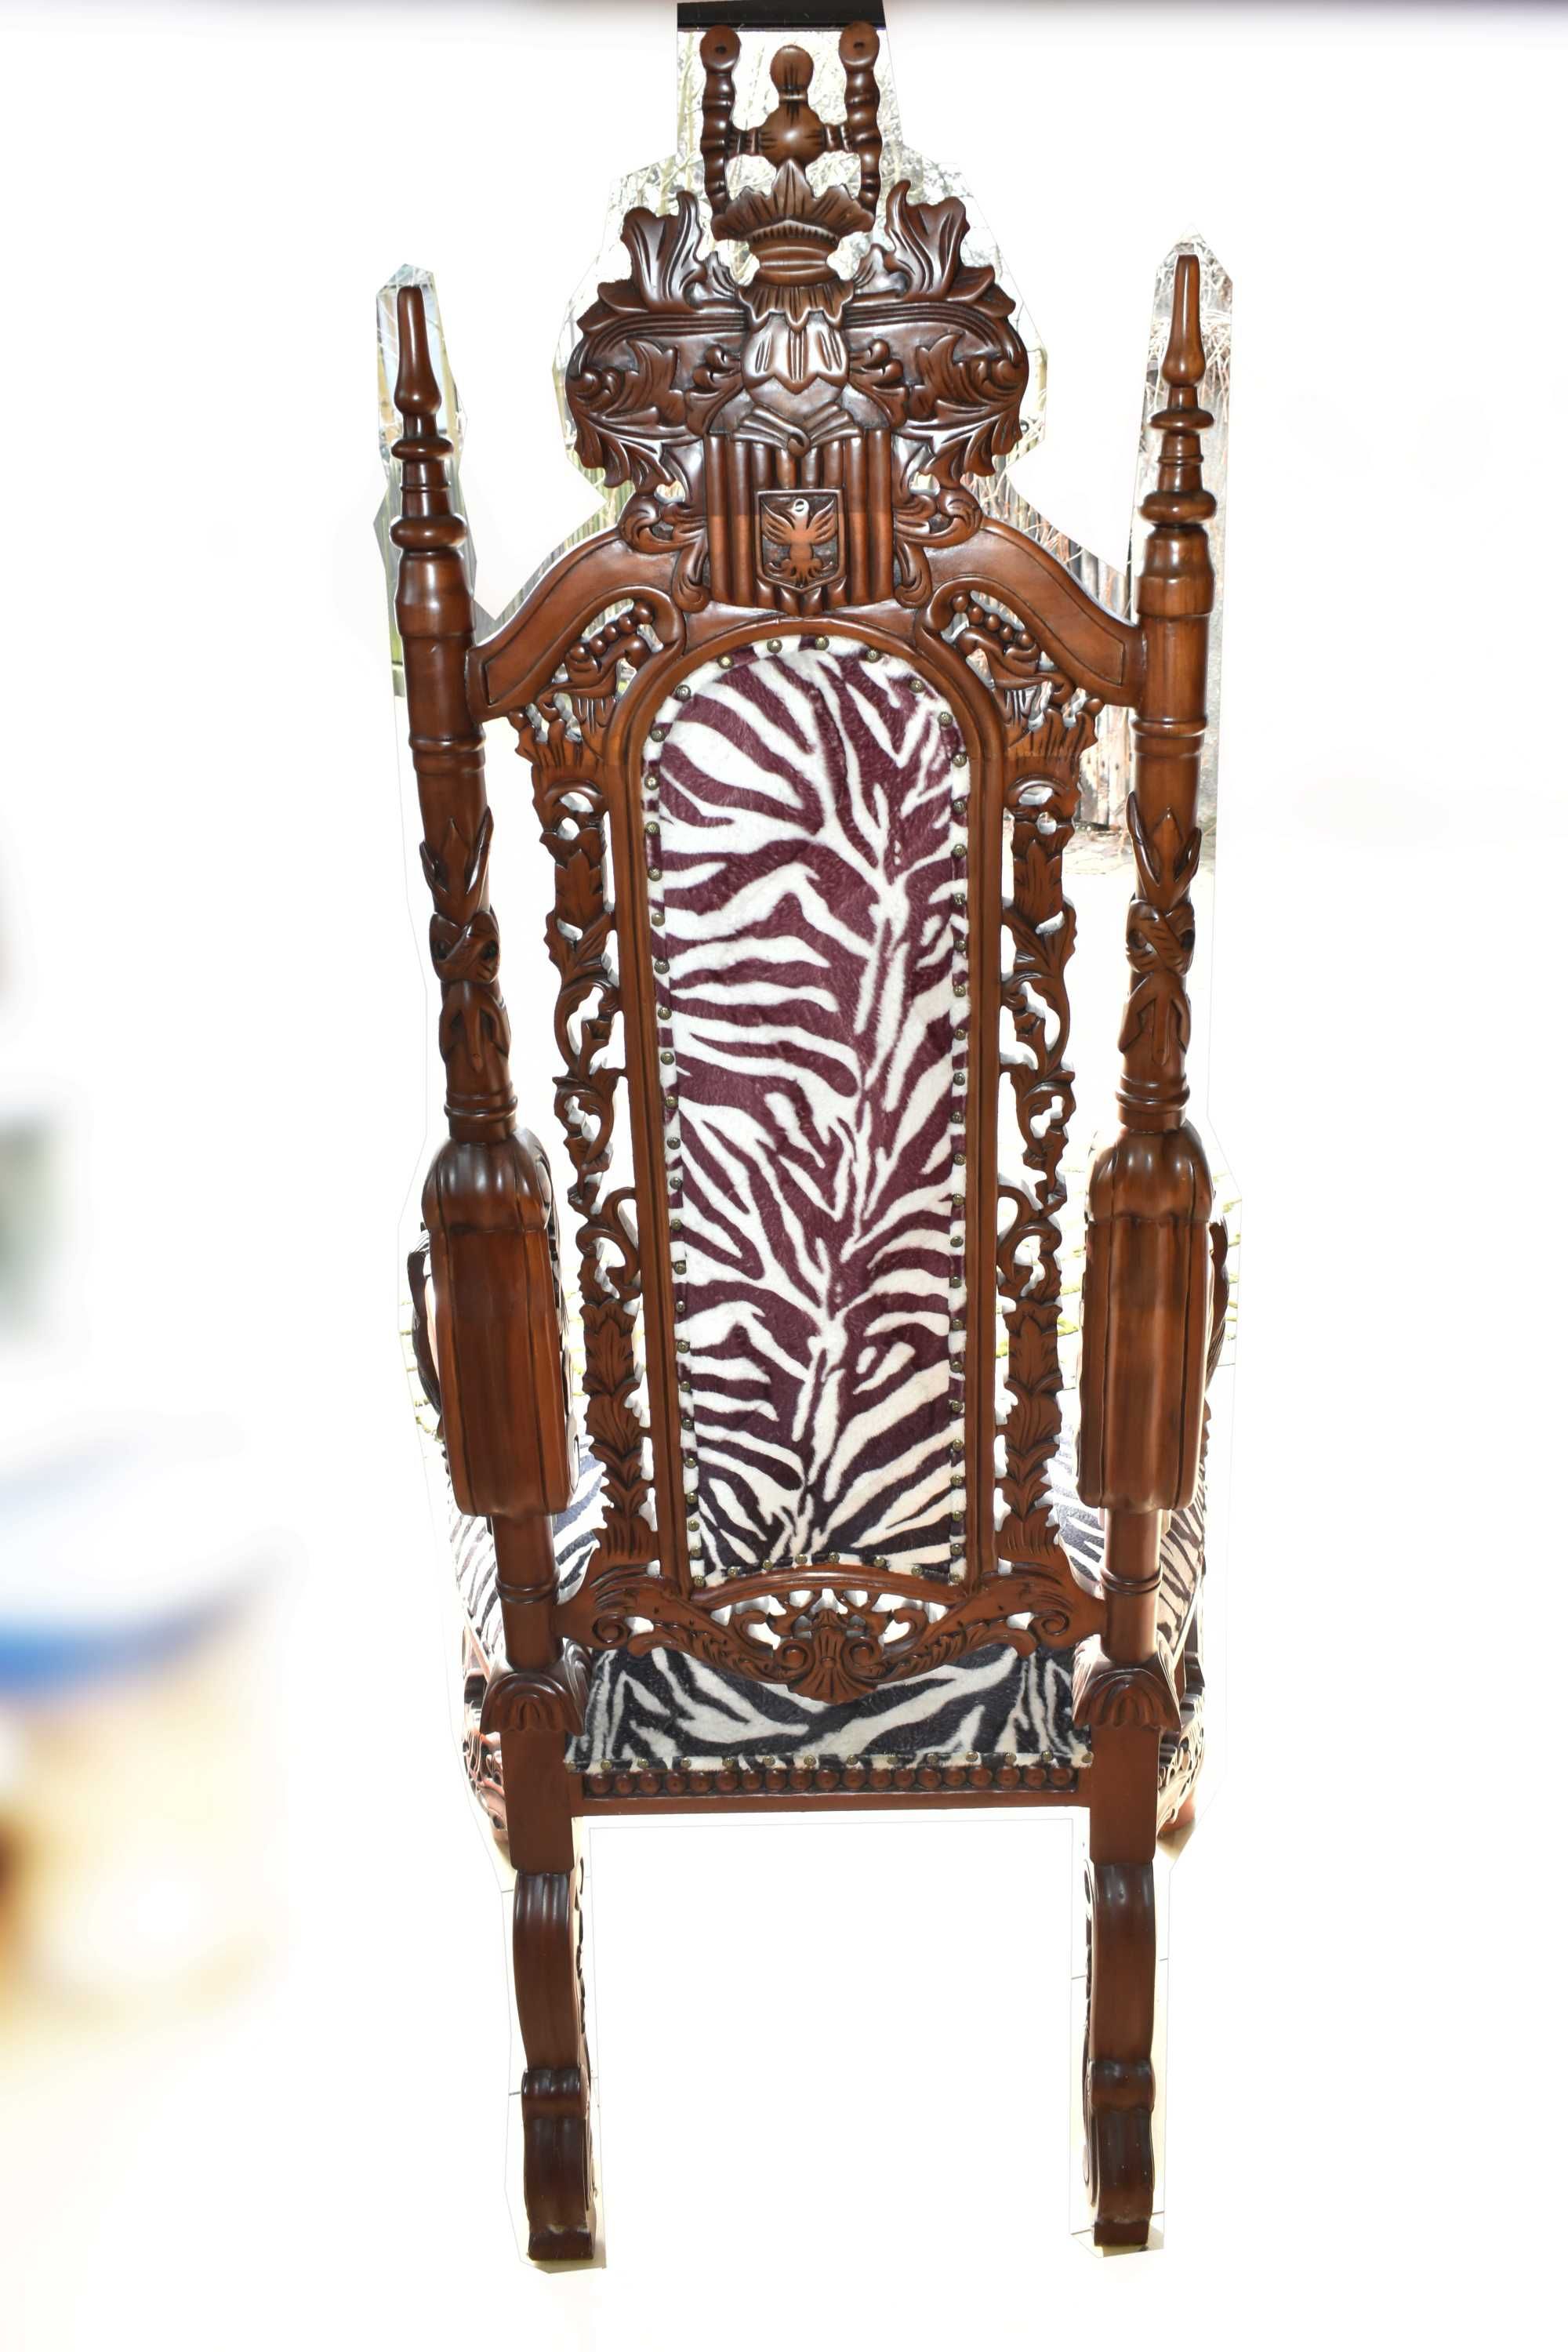 Krzesło fotel drewniany rzeźbiony z podłokietnikami tron wzór konie